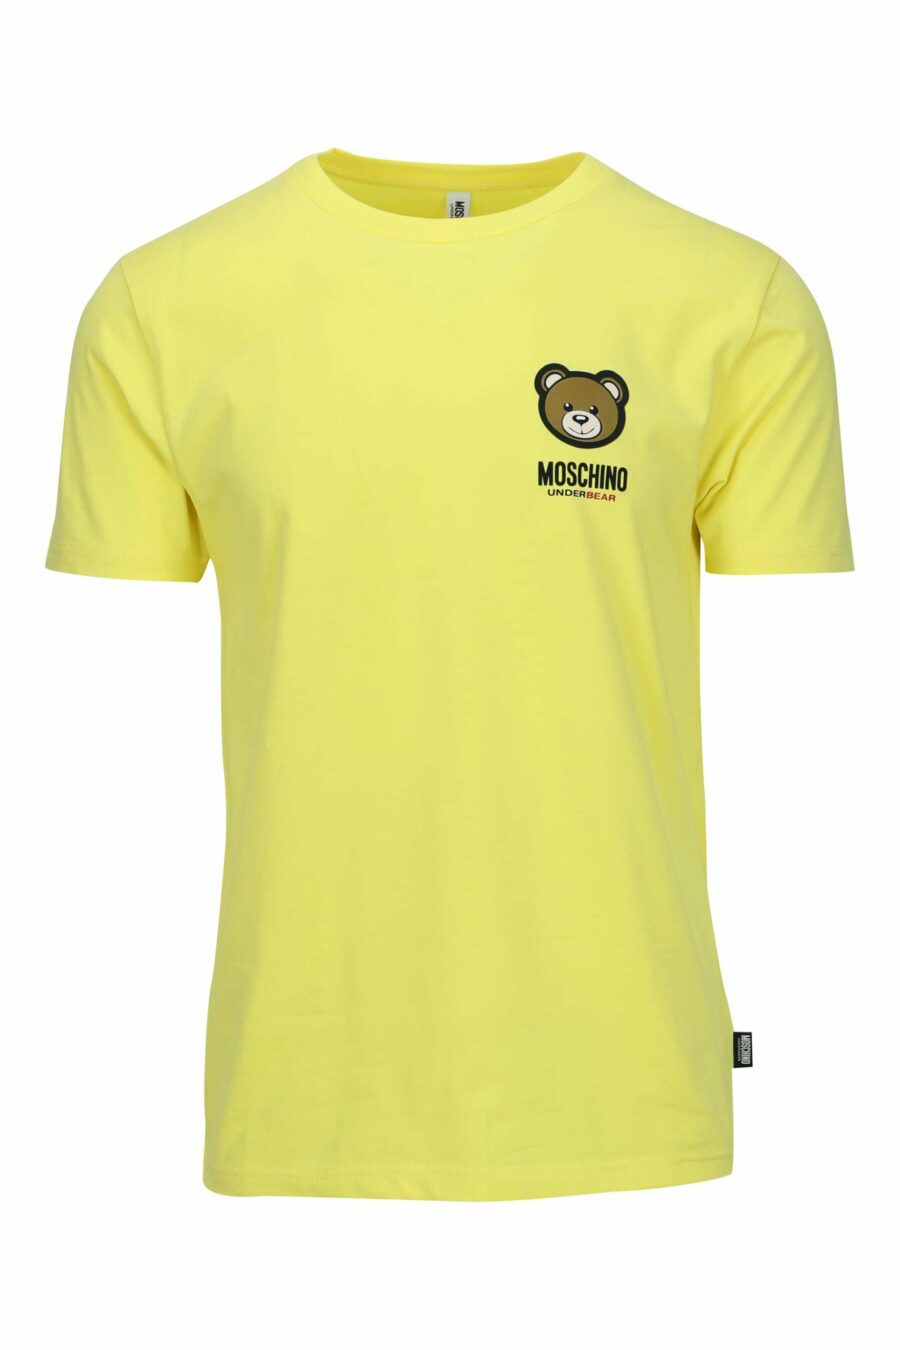 Camiseta amarilla con minilogo parche oso "underbear" - 667113605913 scaled